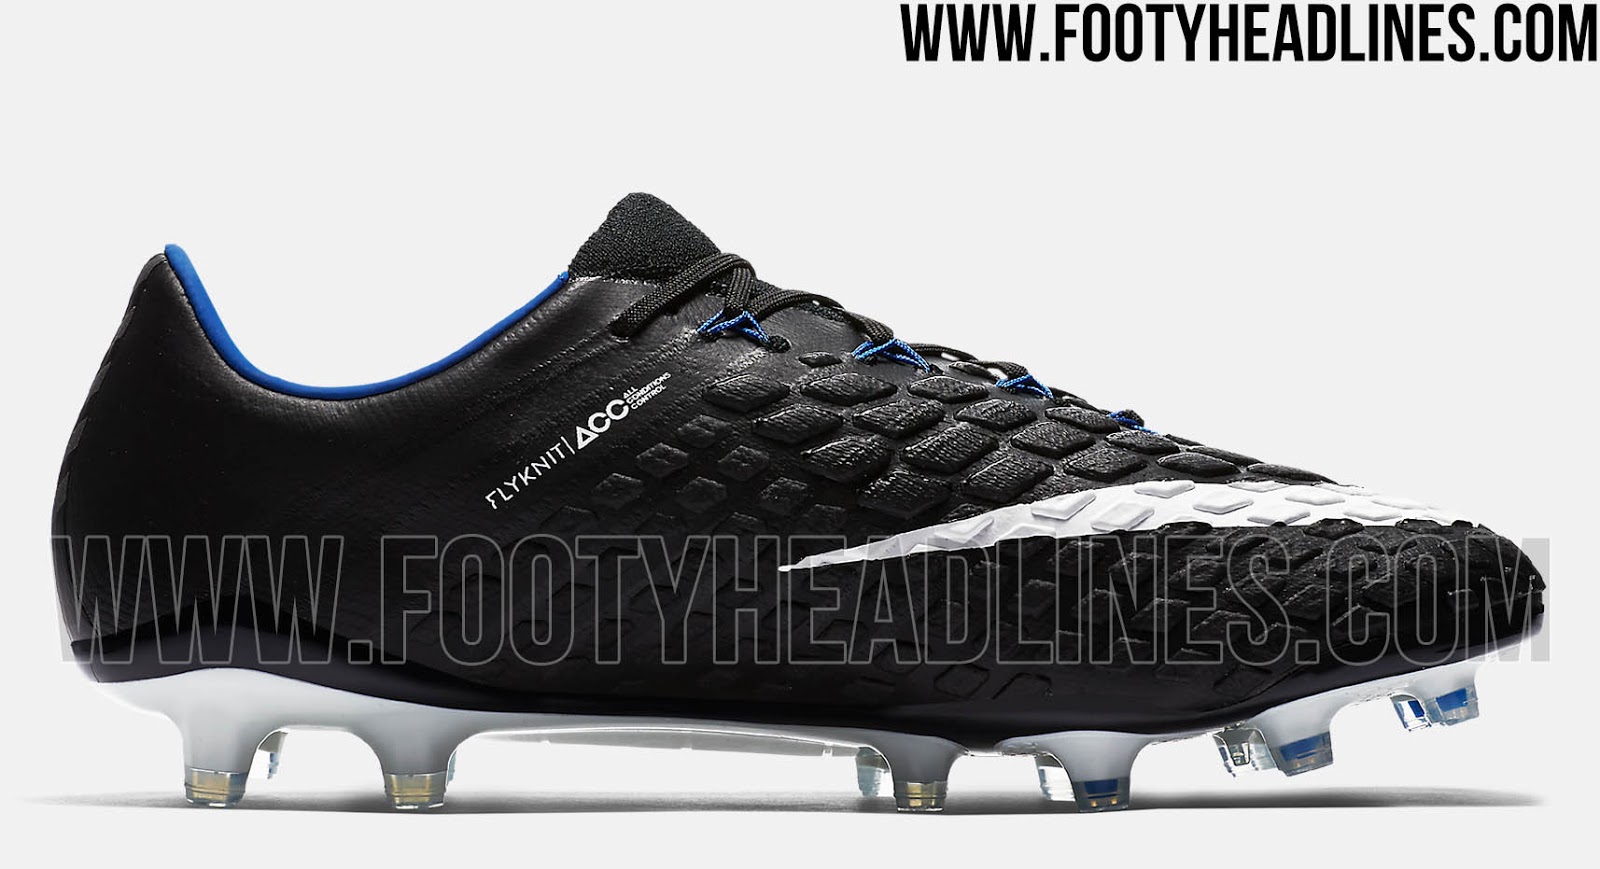 Nike Hypervenom Phantom III DF FG Black White Men's Soccer Shoes